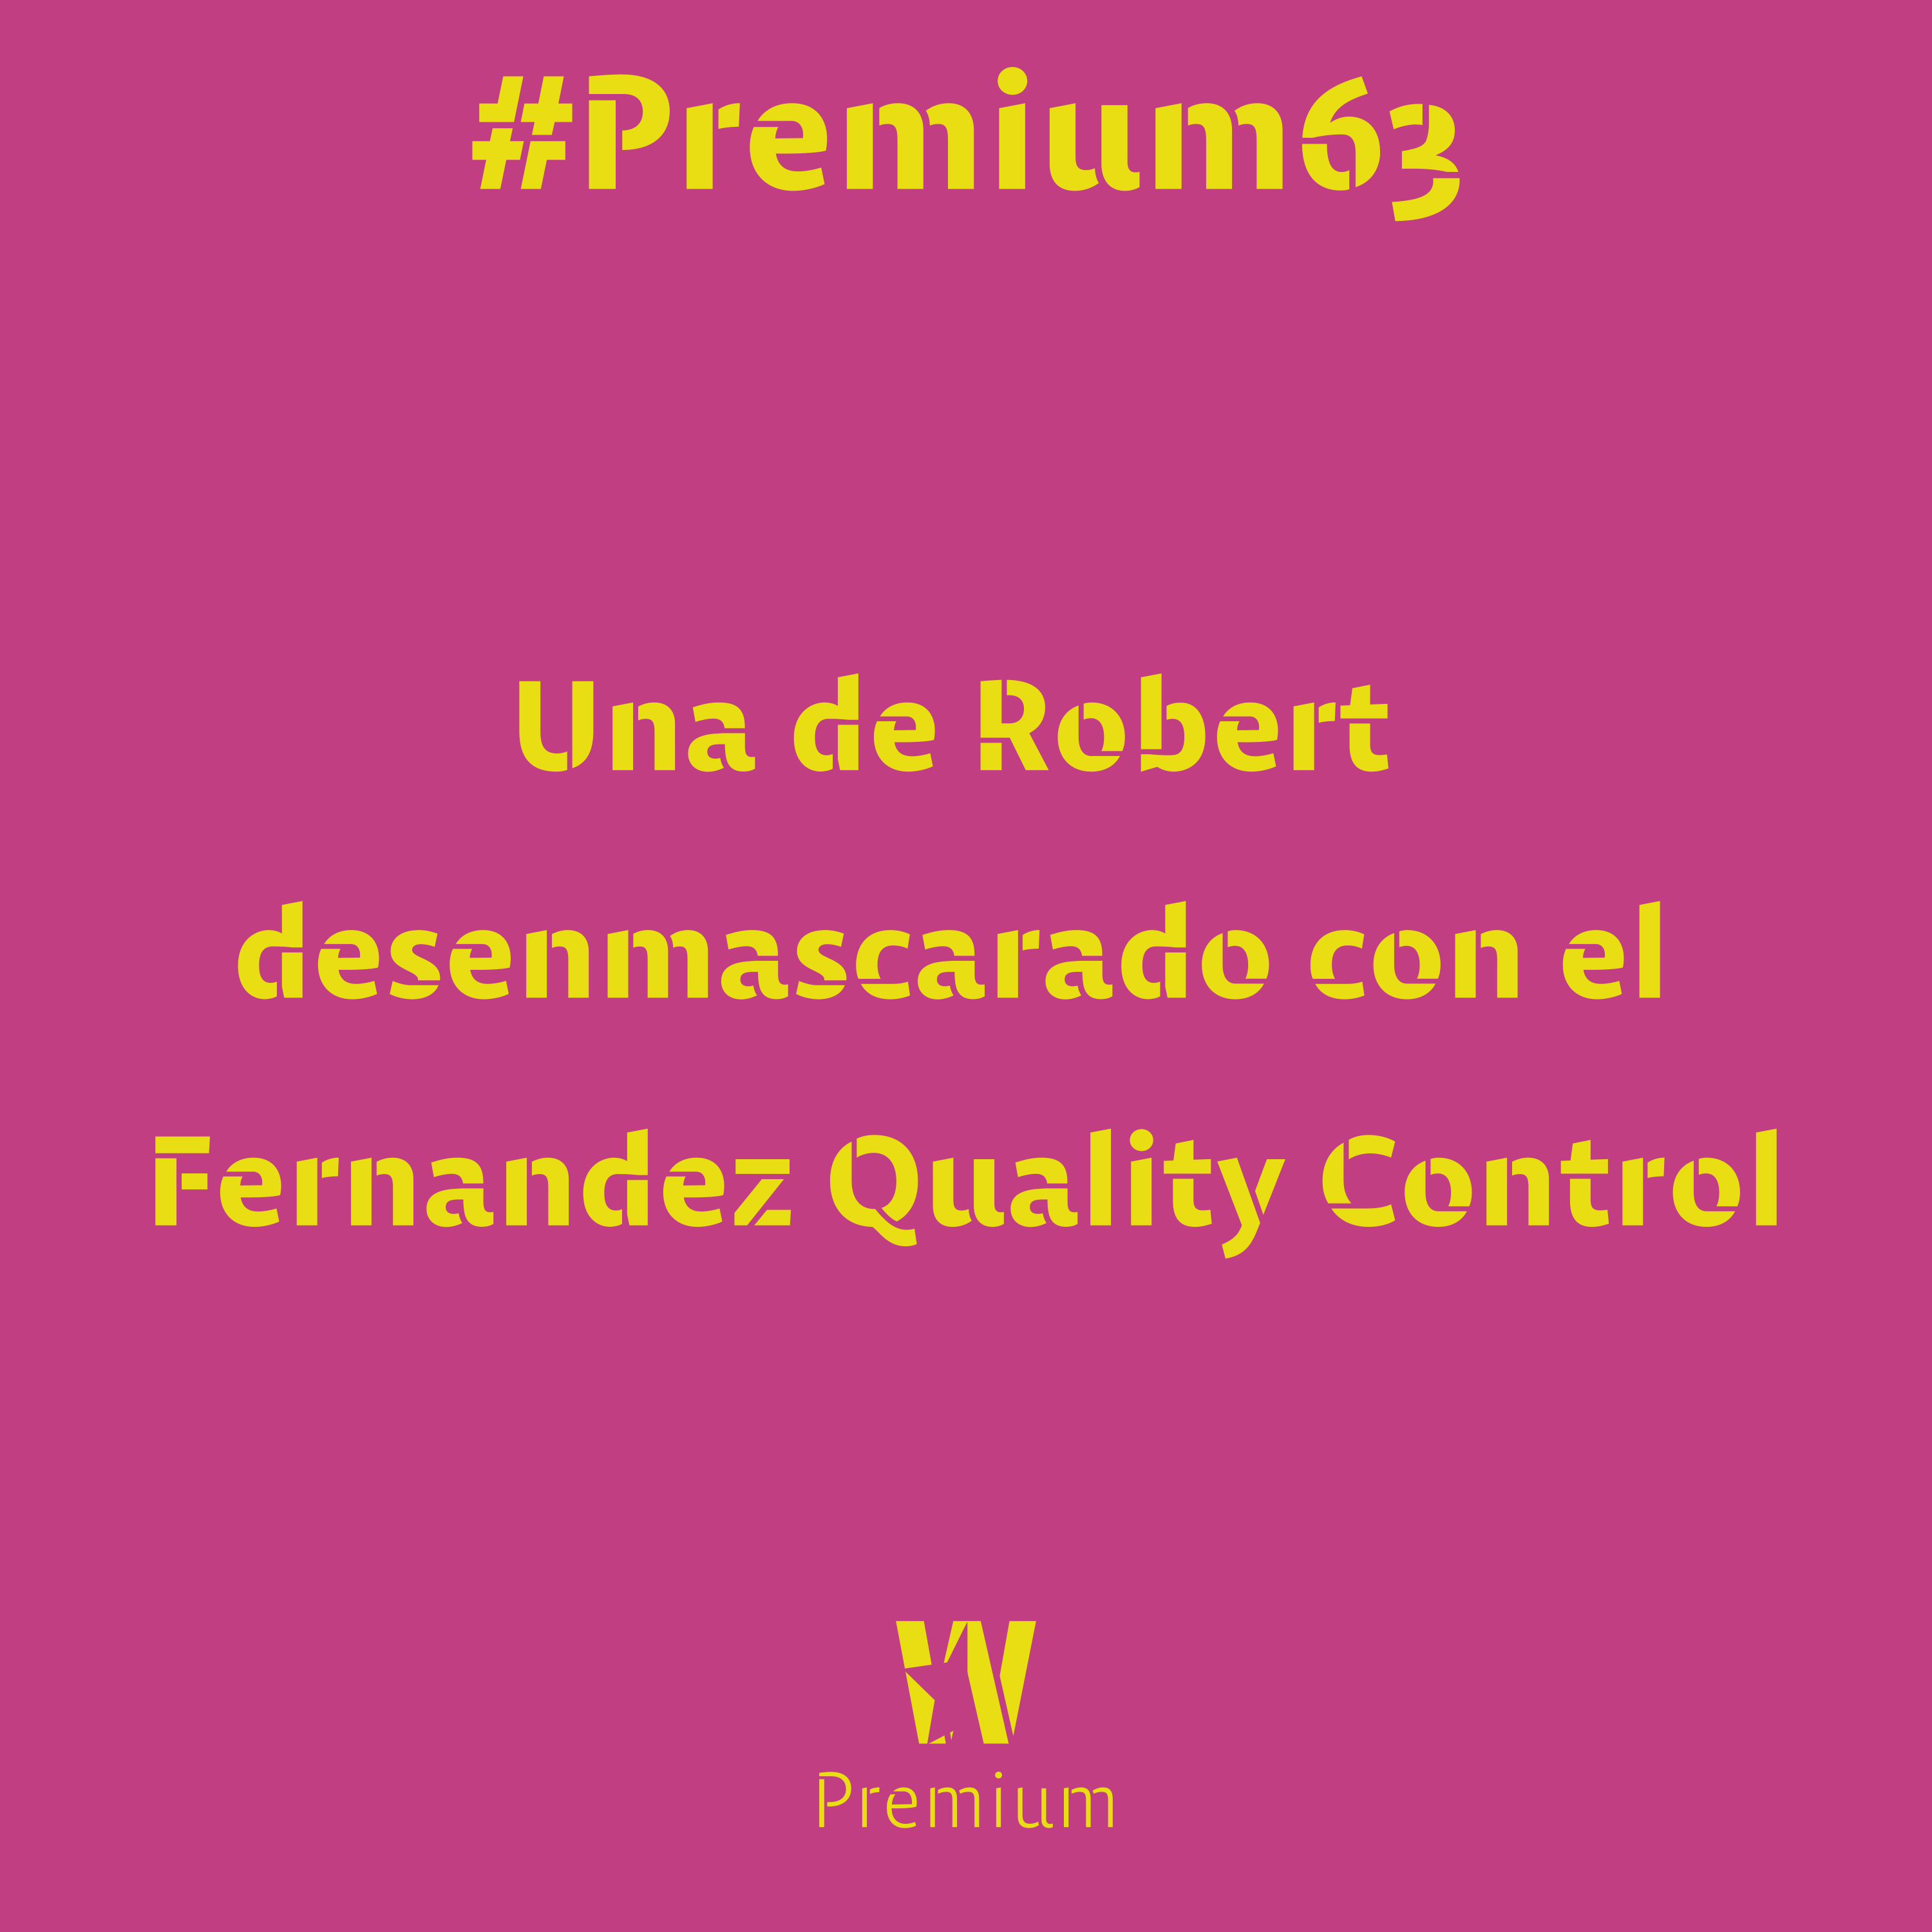 #Premium63 - Una de Robert desenmascarado con el Fernandez Quality Control